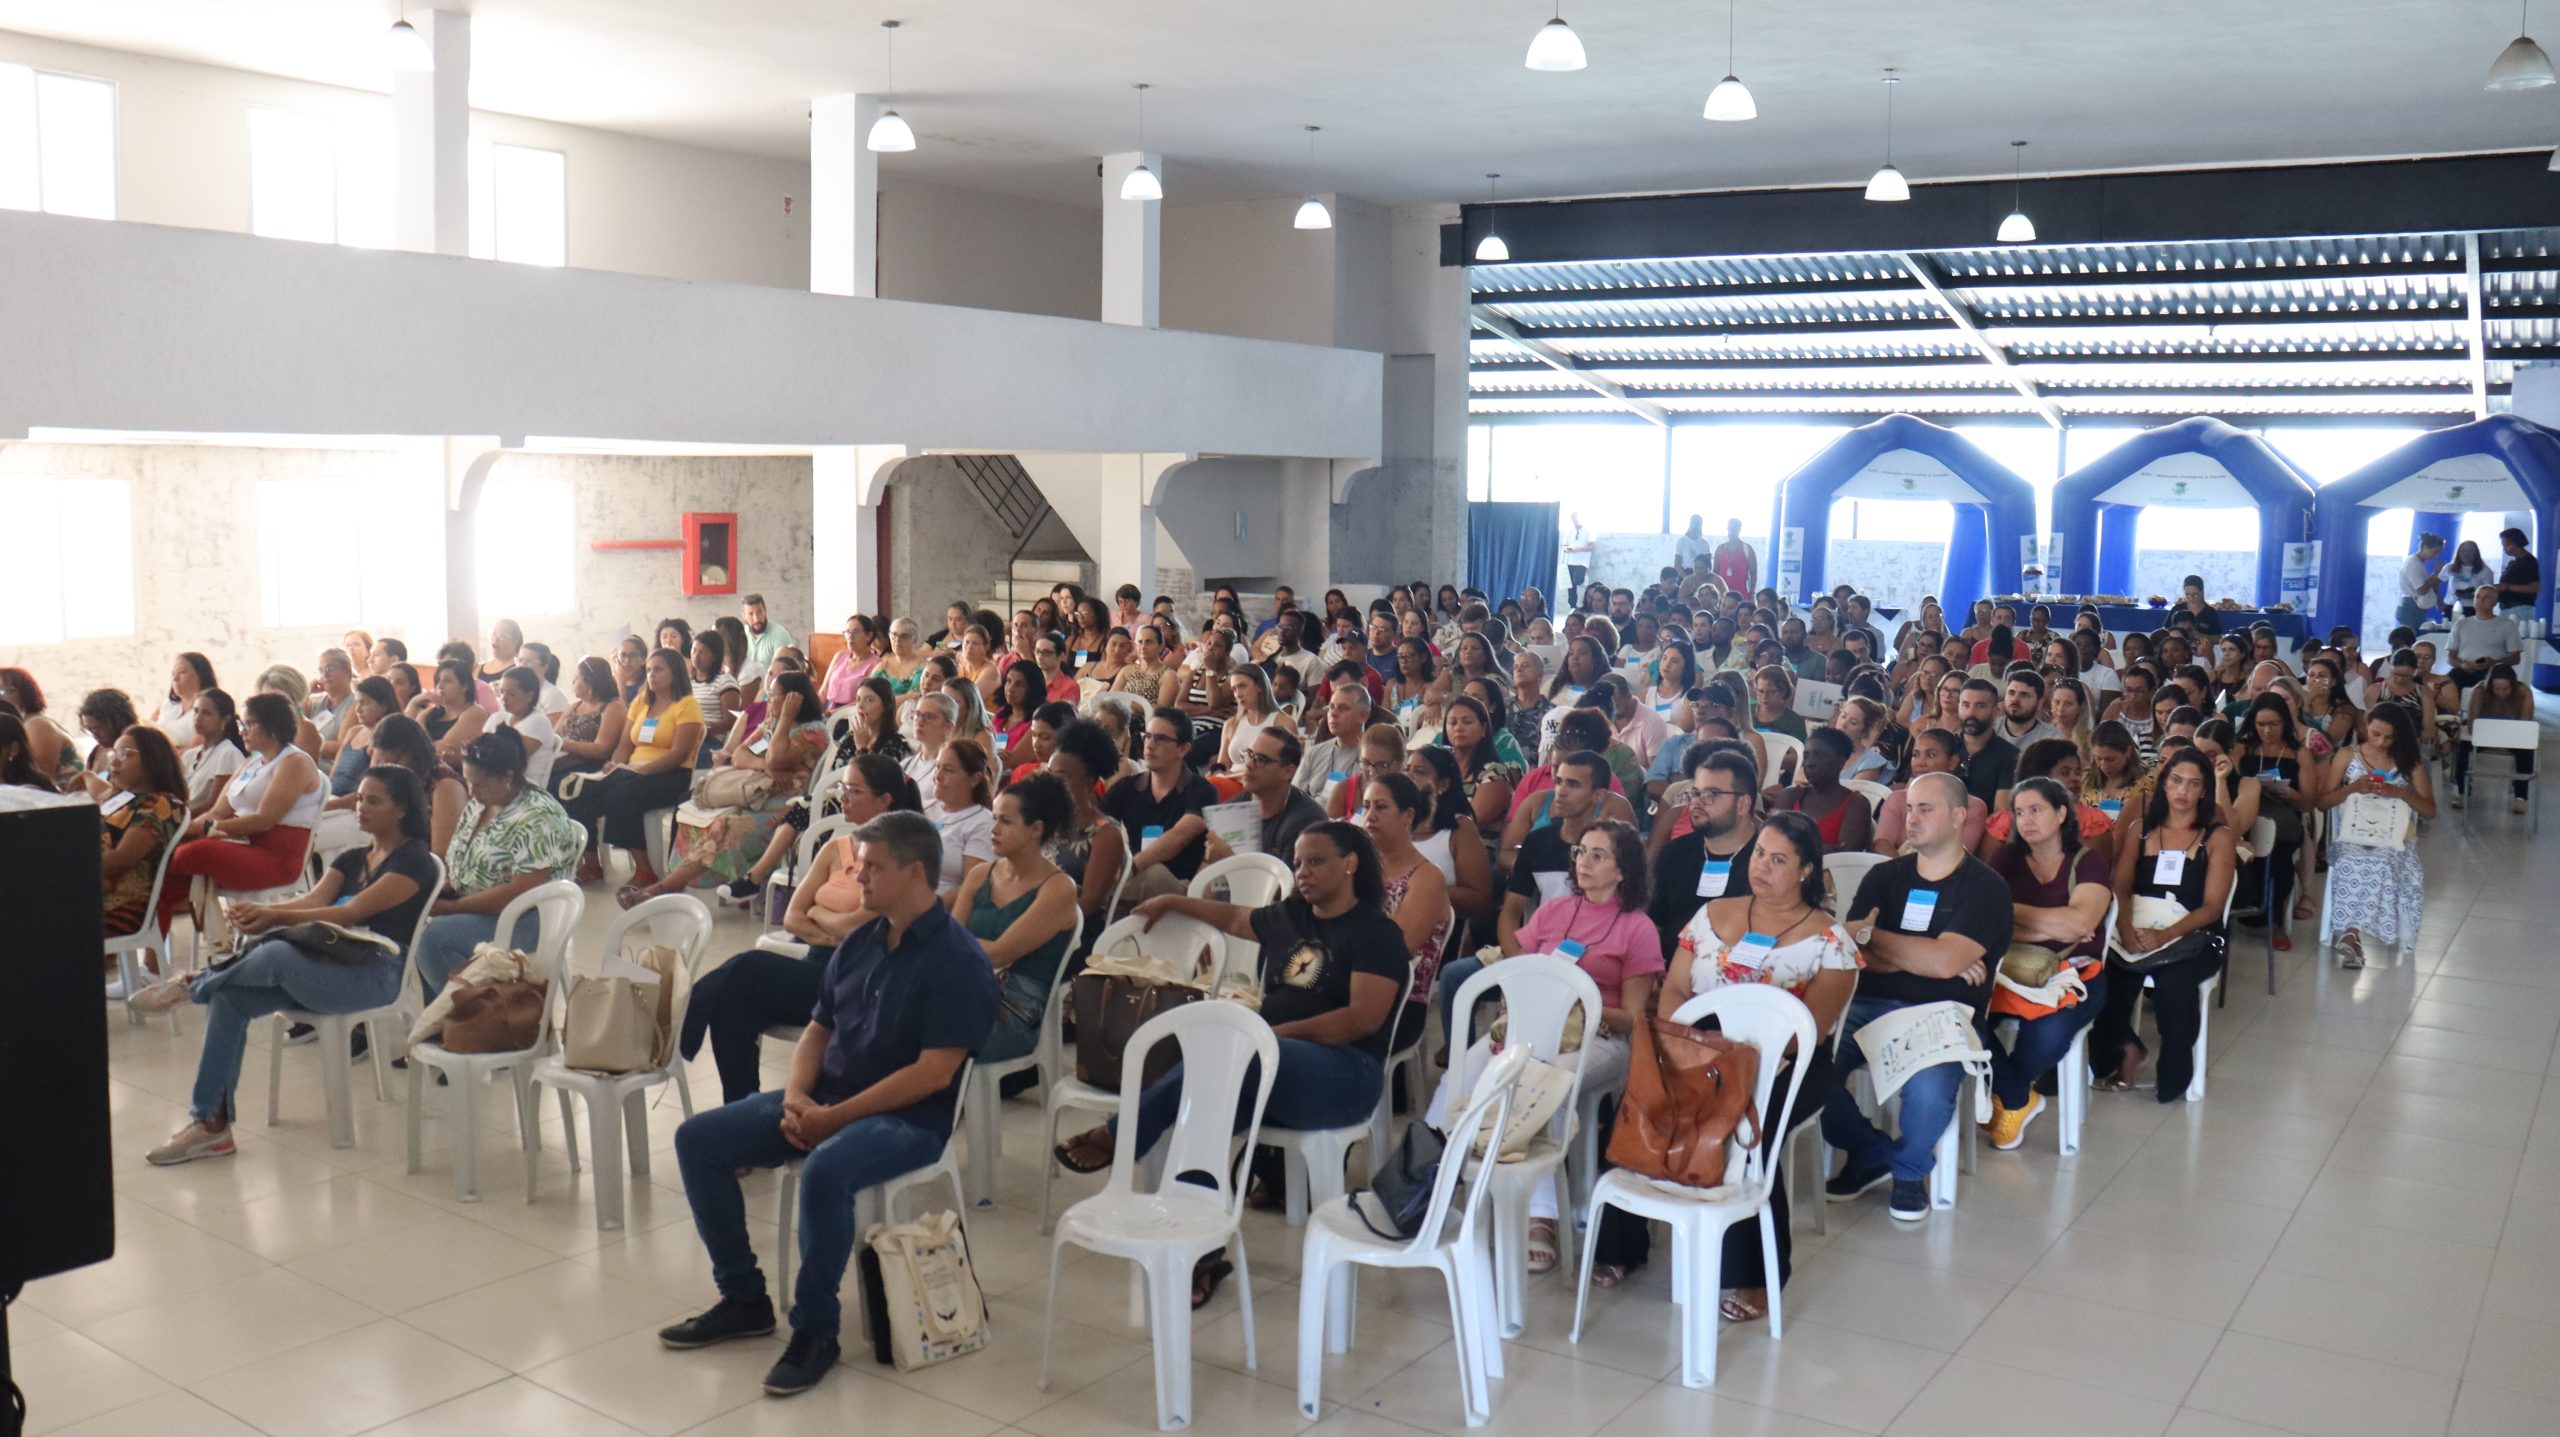 II Encontro da Atenção Primária em Saúde reúne mais de 250 profissionais da saúde em São Pedro da Aldeia